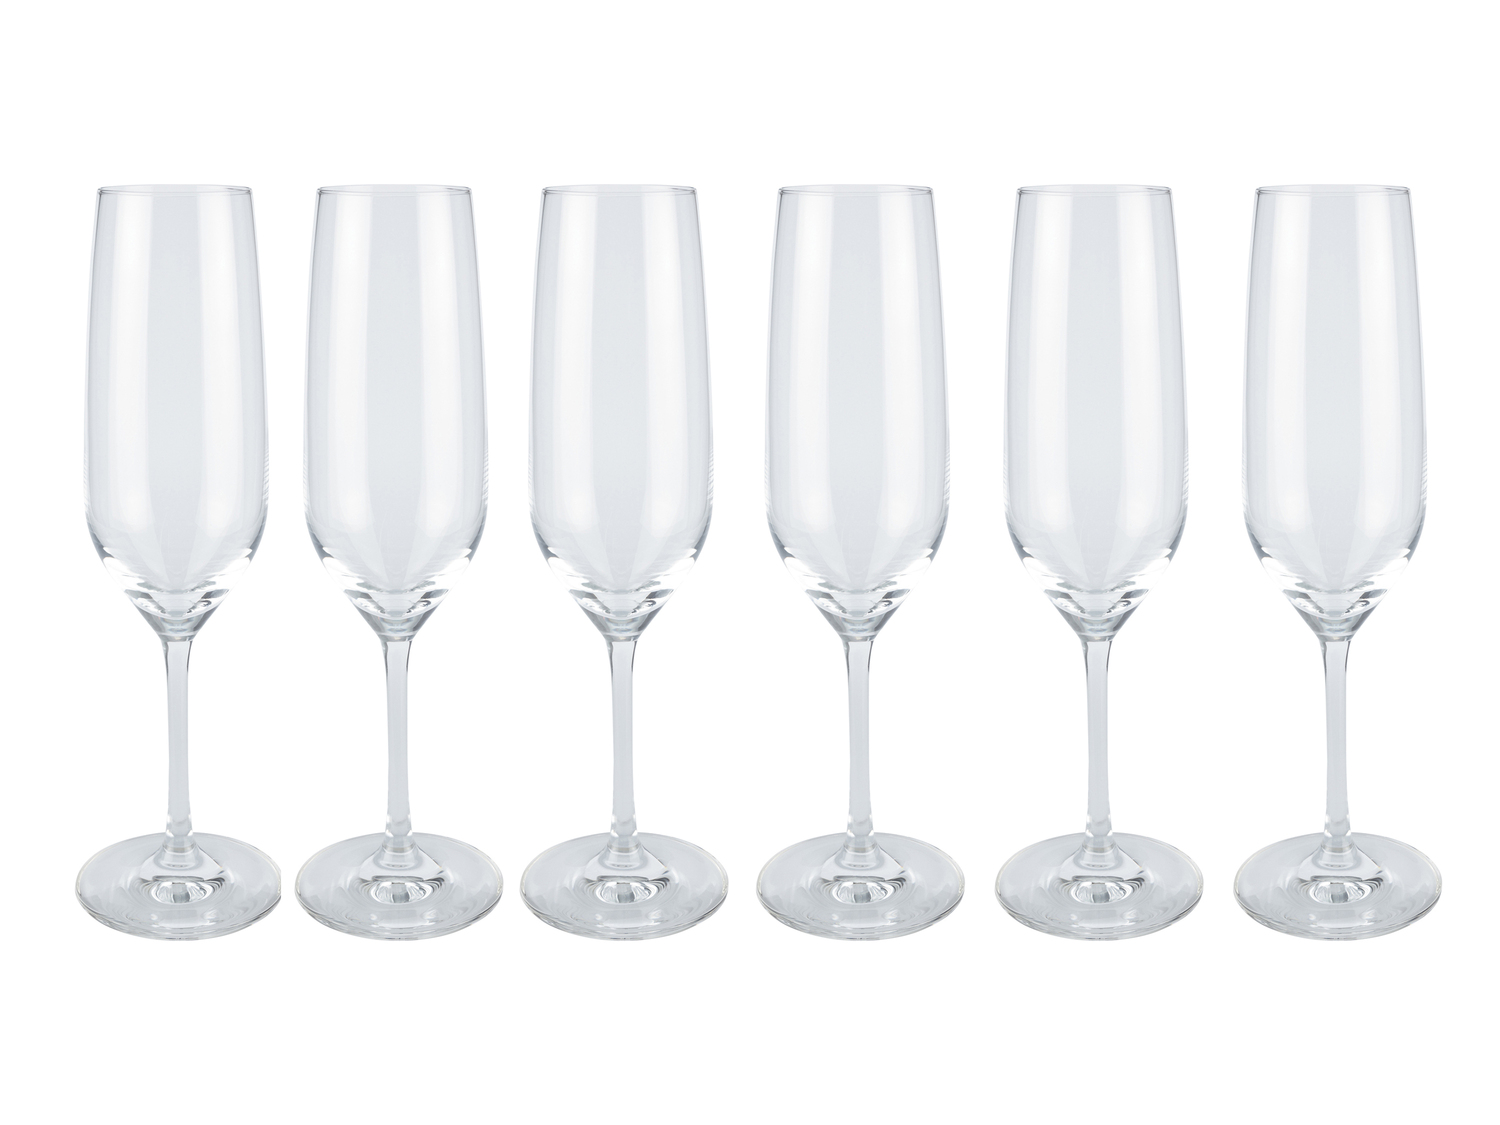 Set bicchieri Ernesto, prezzo 9.99 &#8364; 
6 pezzi 
- In cristallo
- Antigraffio ...